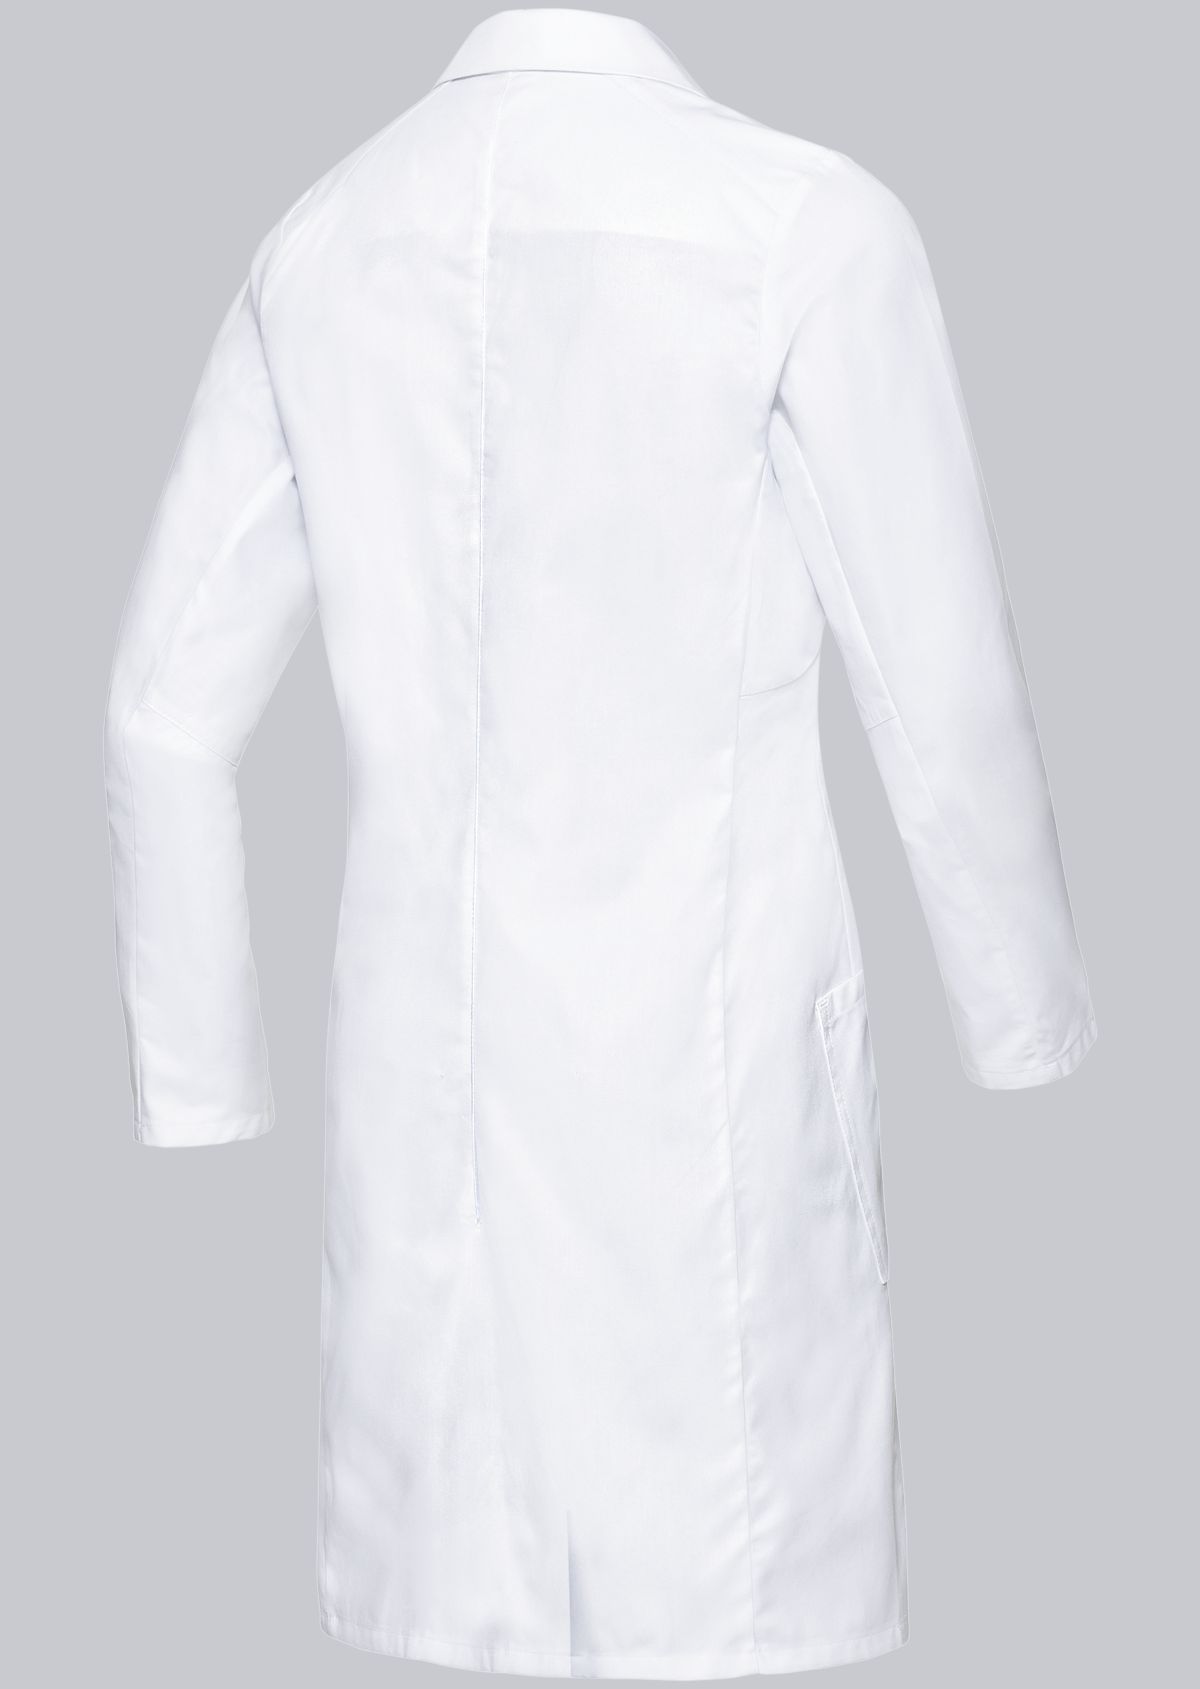 BP® Cotton women's doctor's coat